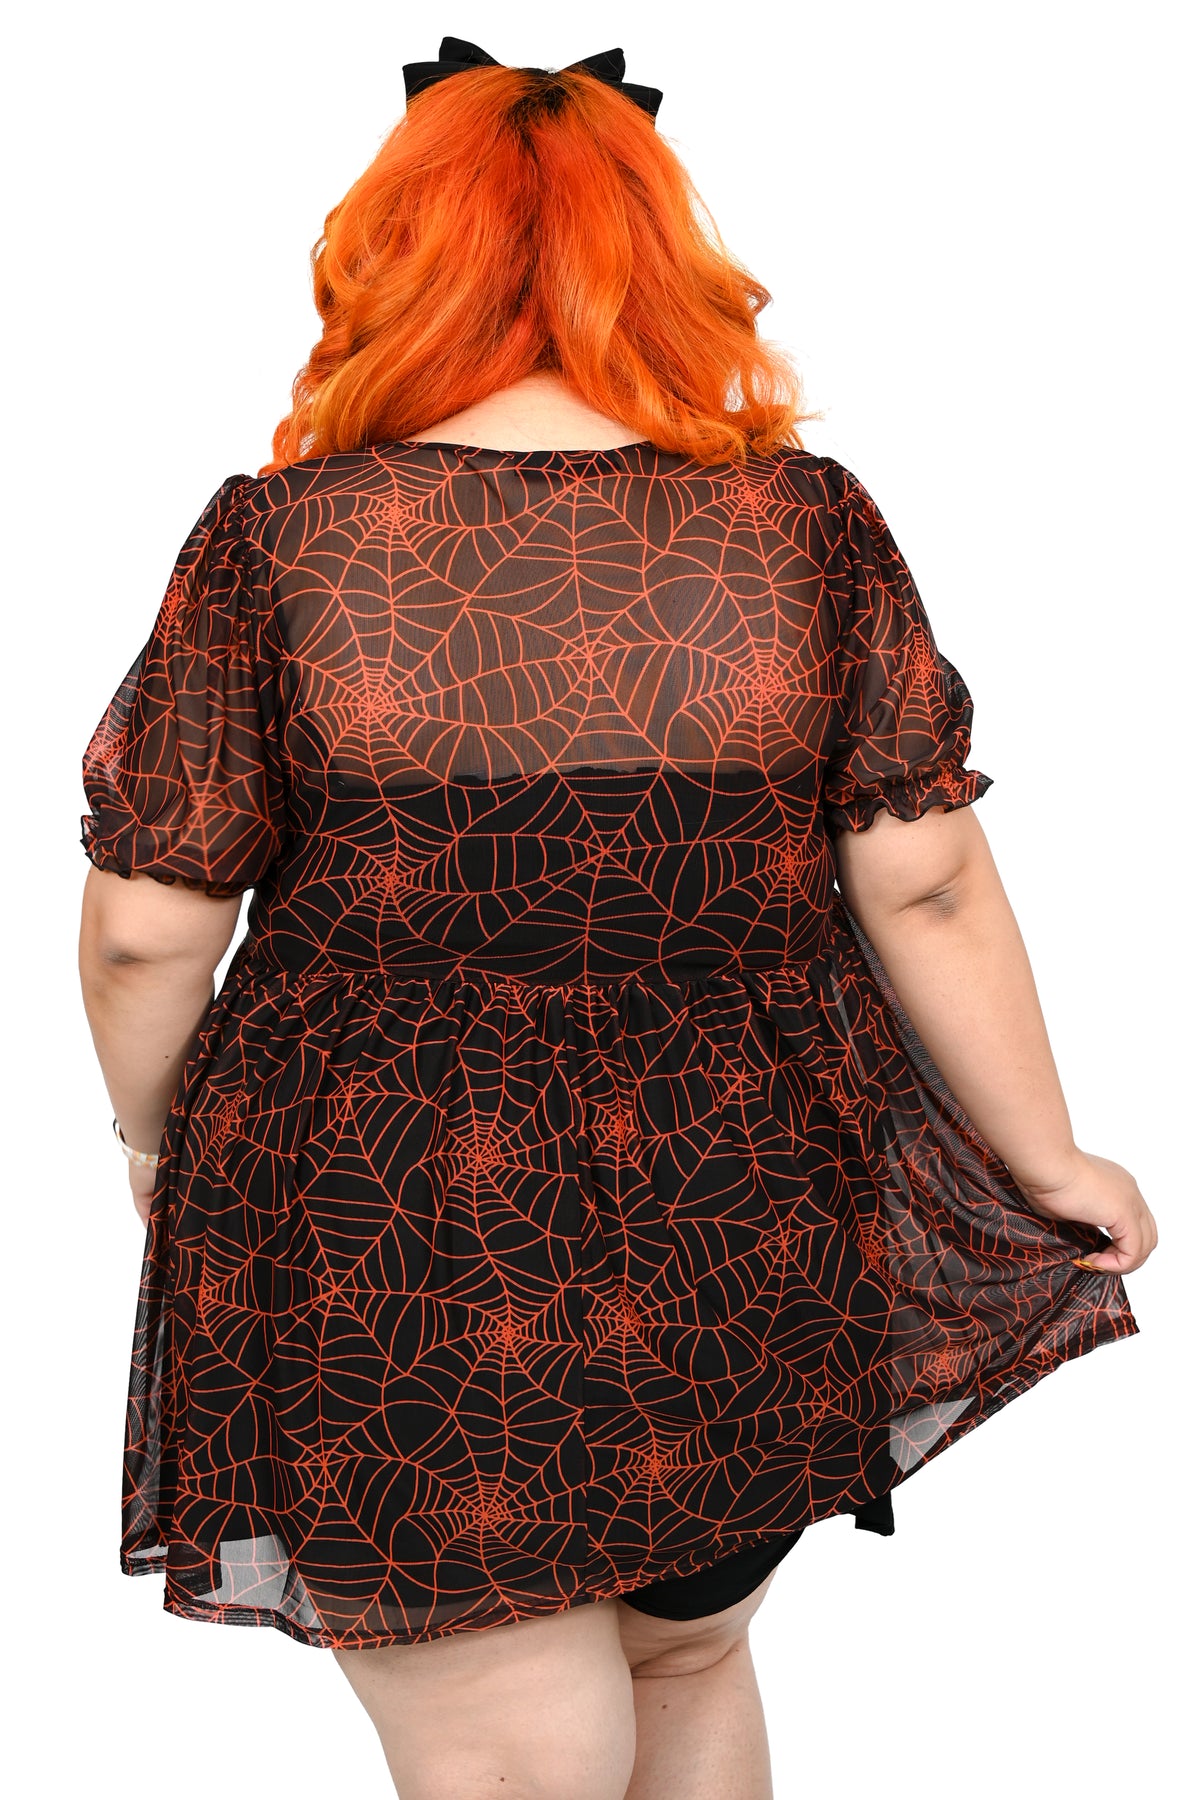 Black sheer mesh dress with custom orange spiderwebs